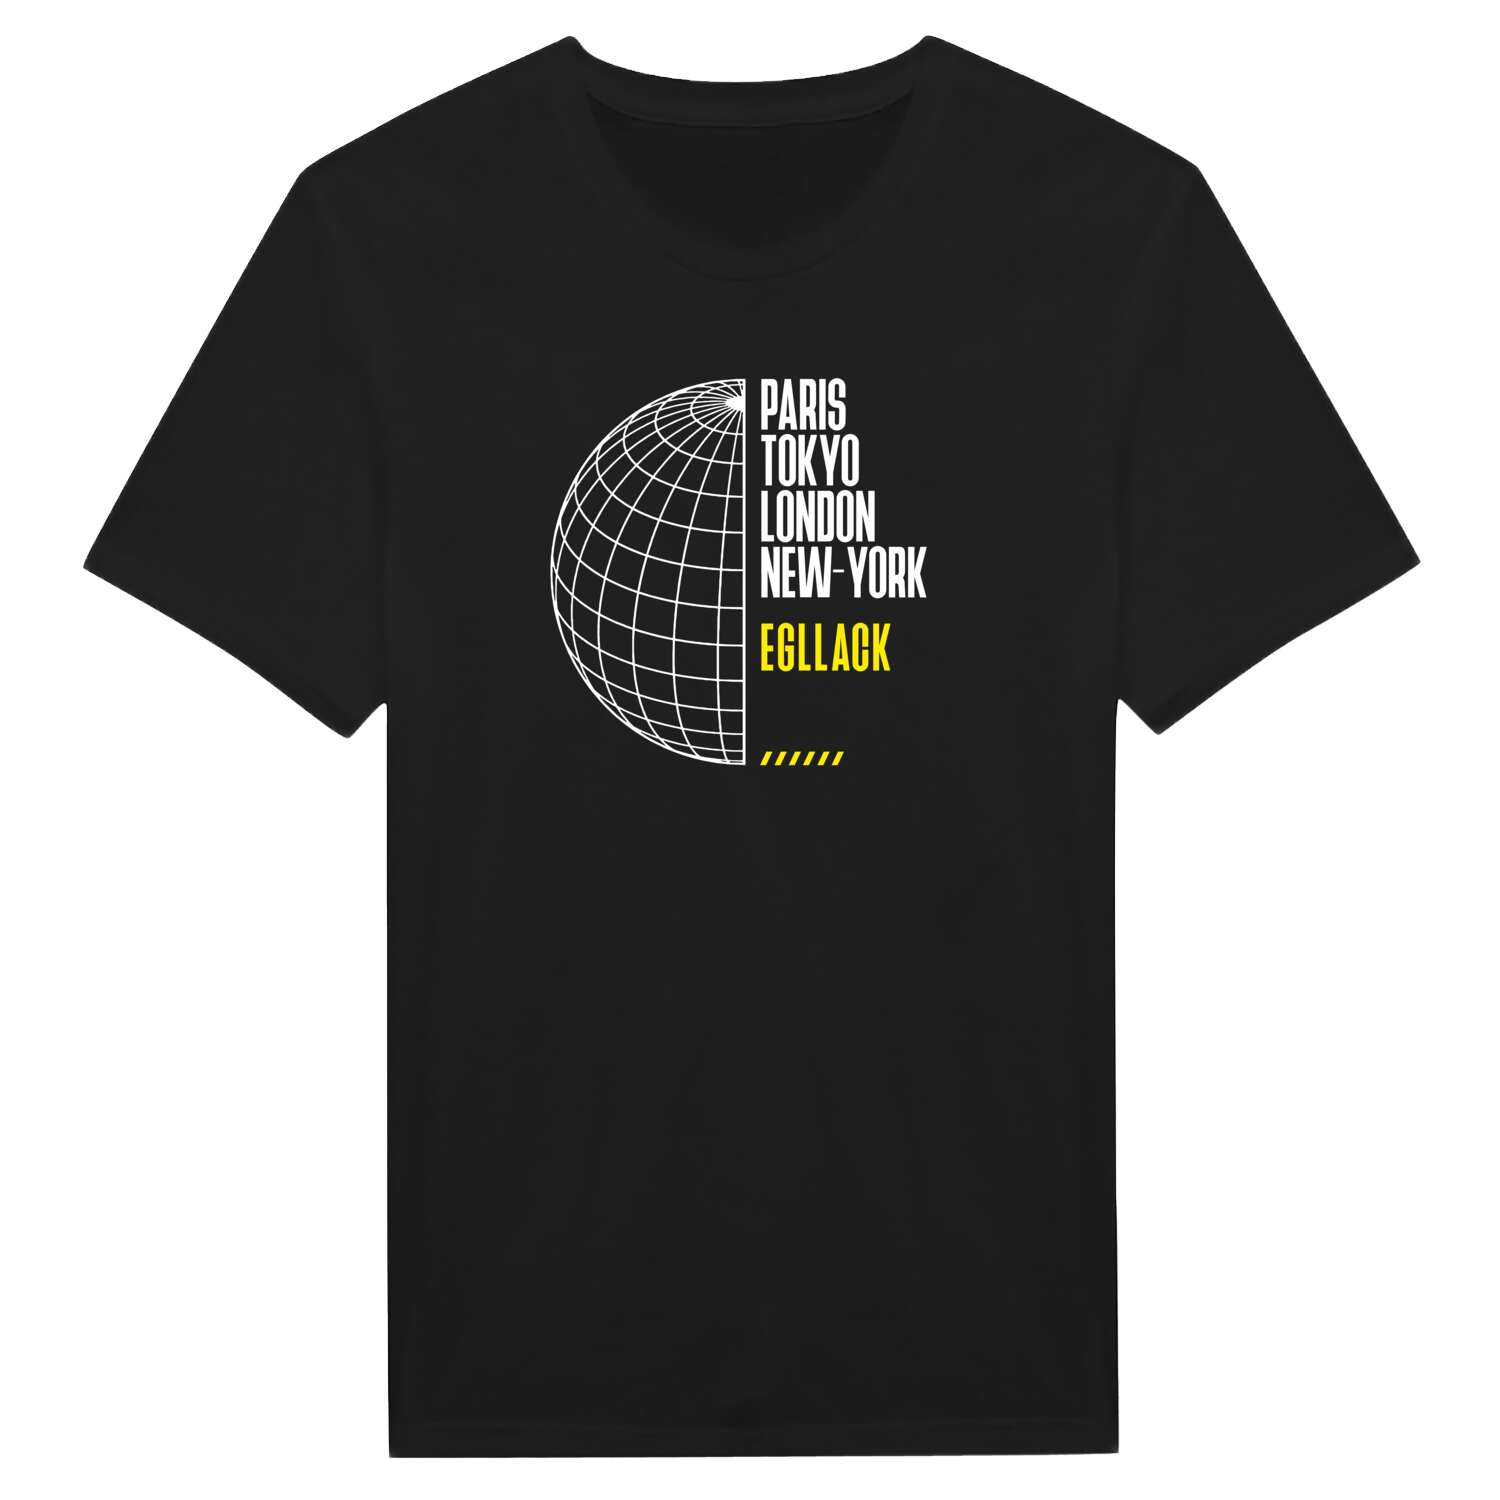 Egllack T-Shirt »Paris Tokyo London«